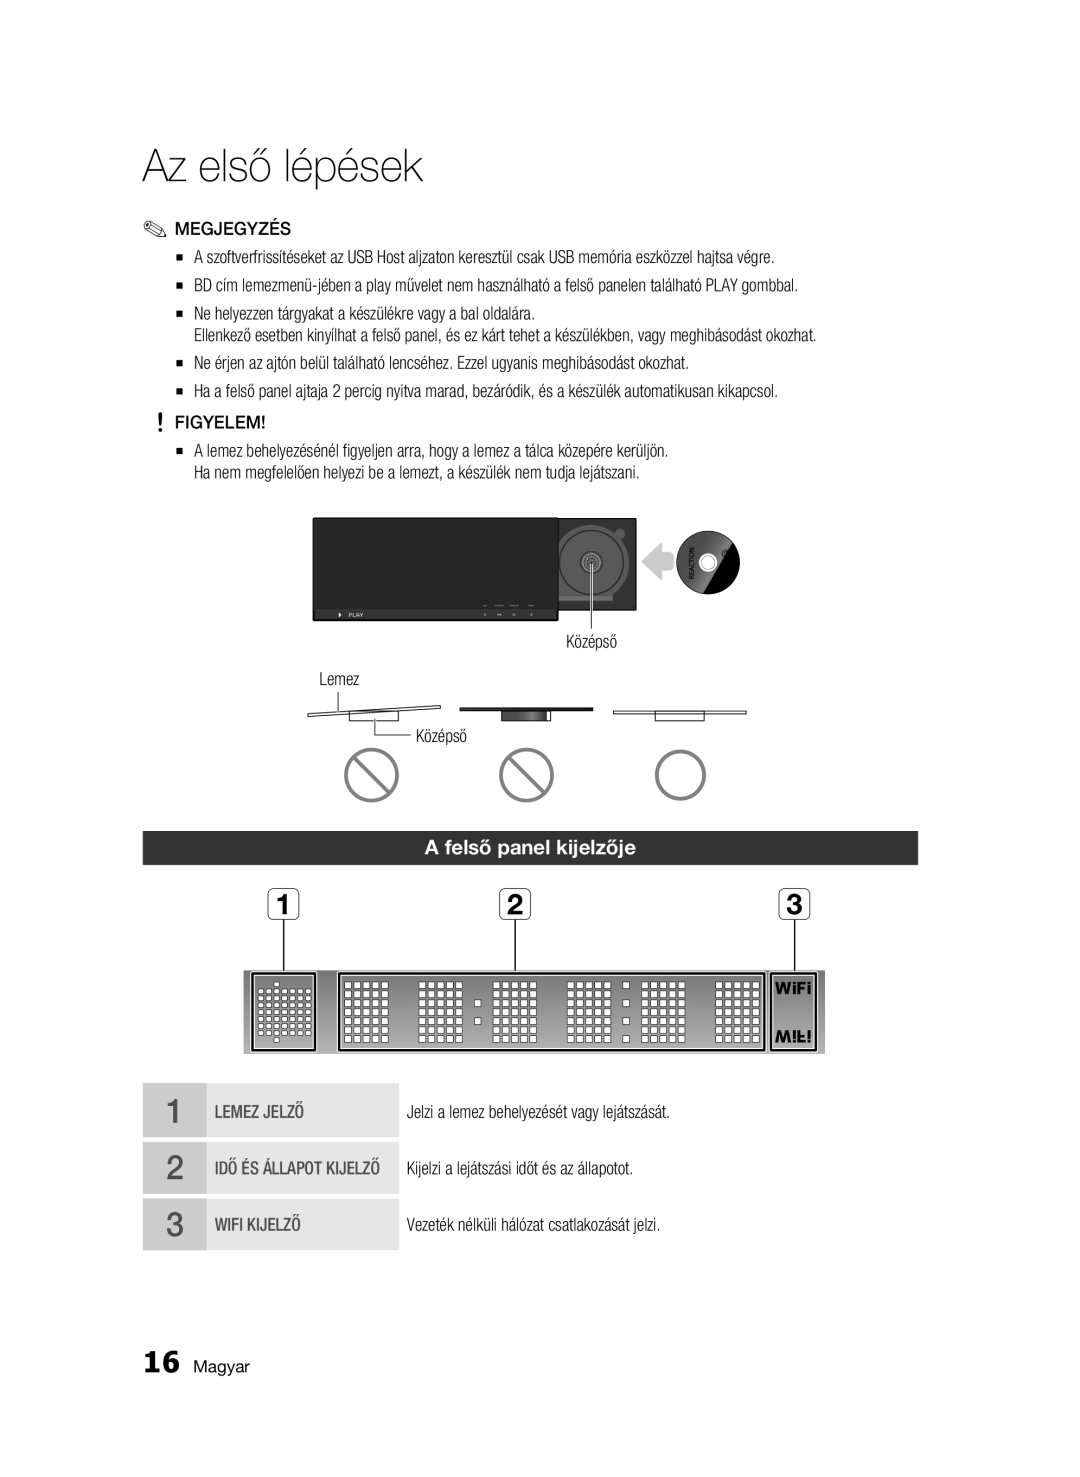 Samsung BD-C7500W/EDC, BD-C7500W/XEE manual Felső panel kijelzője, Figyelem, Középső Lemez 